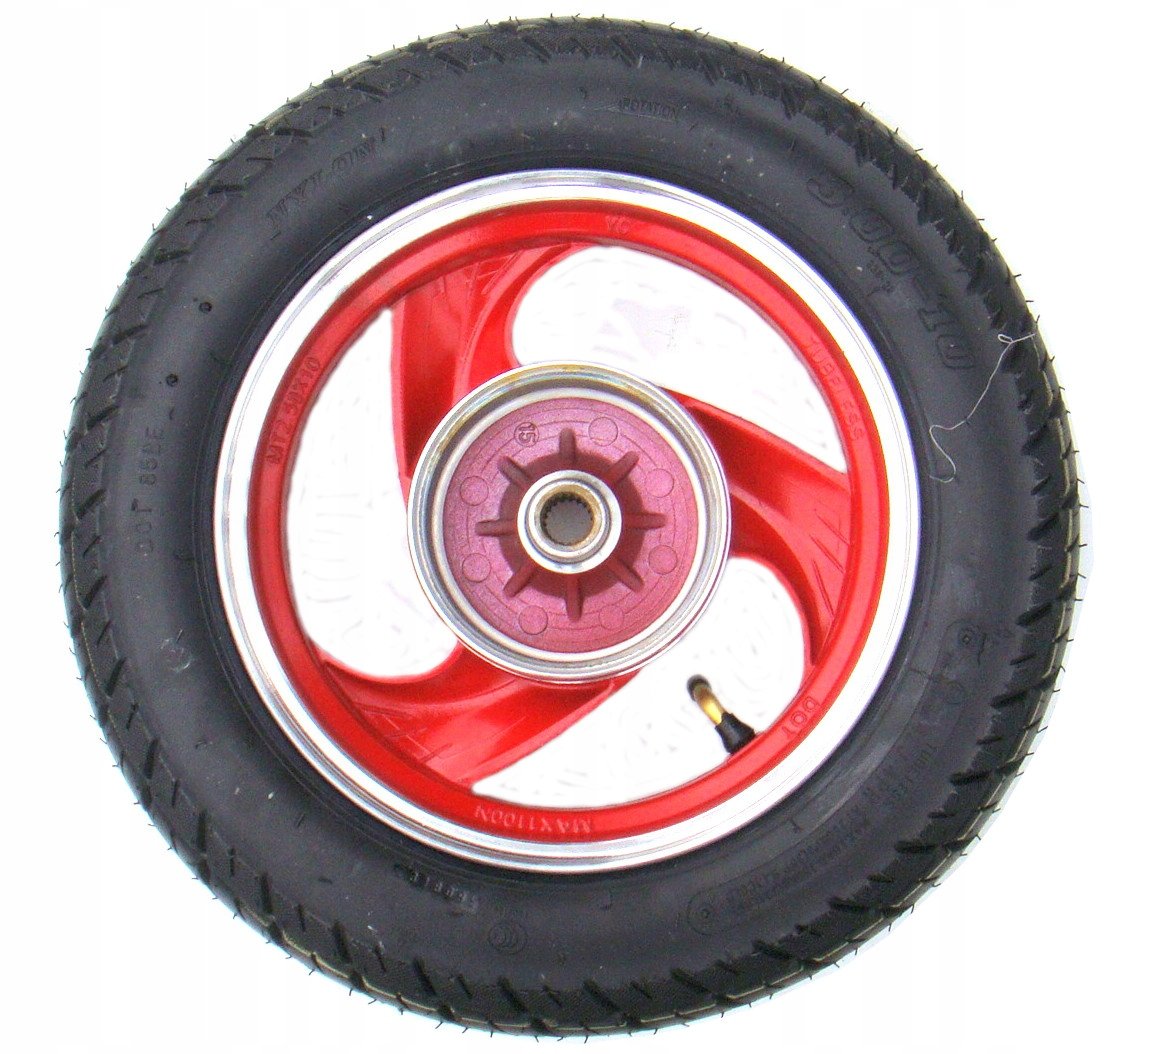 Резина на скутер 10. Suzuki скутер переднее колесо 10 дюймов. Колесо r10 139qmb. Колесо скутер 10 дюймов штамп переднее. Заднее колесо на скутер 10 дюймов.